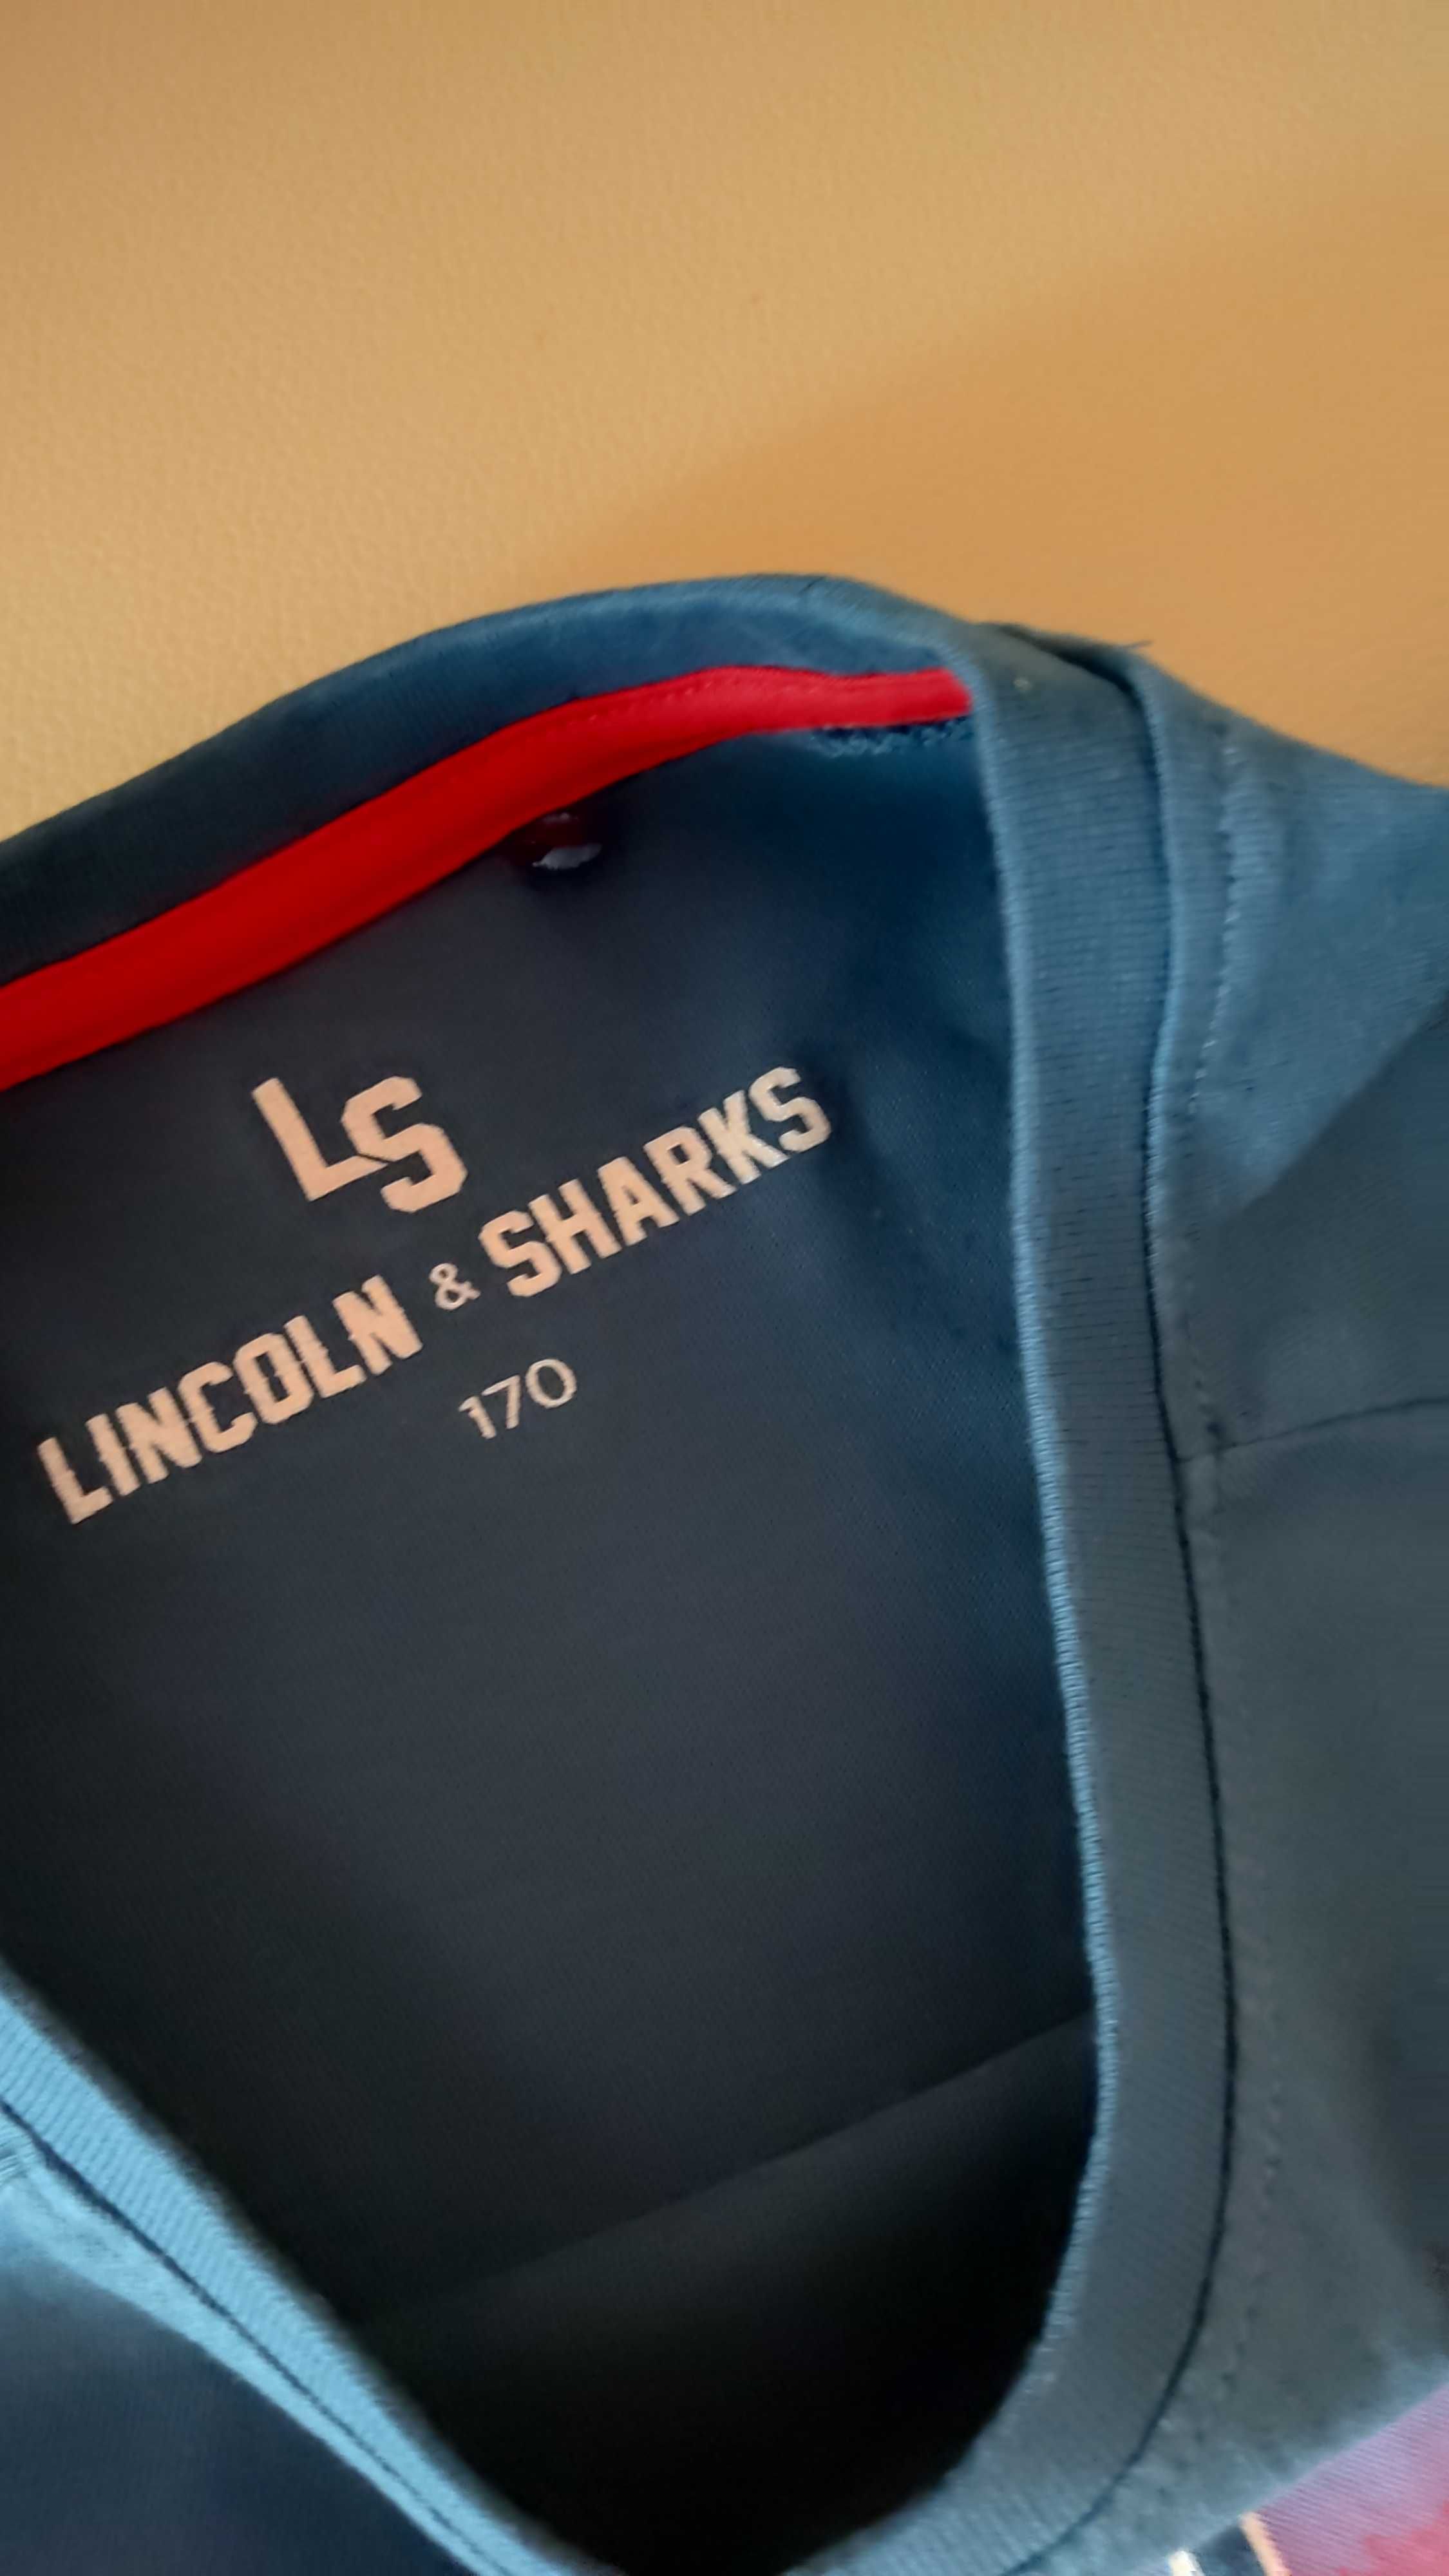 Bluza młodzieżowa męska długi rękaw rozmiar 170 Lincoln Sharks